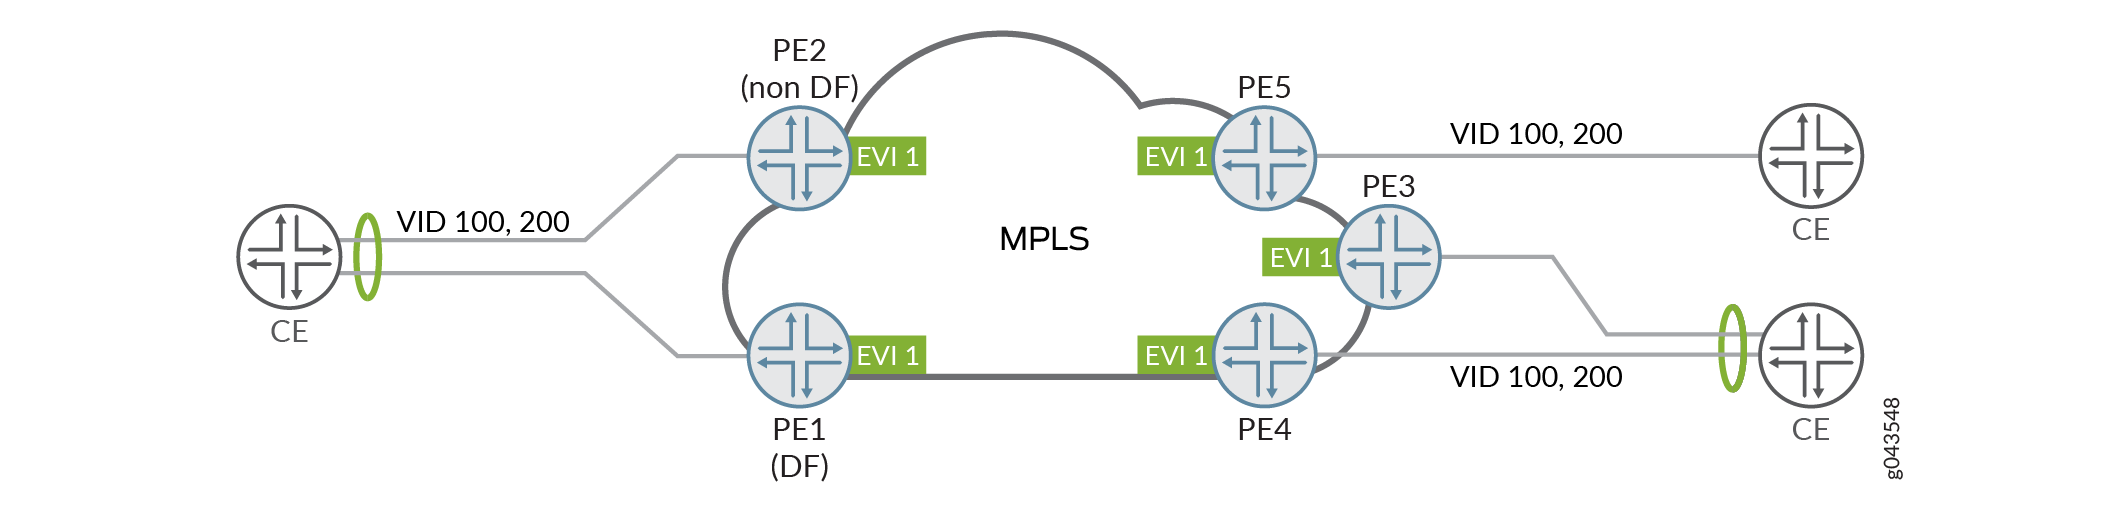 VLAN Bundle Network Topology